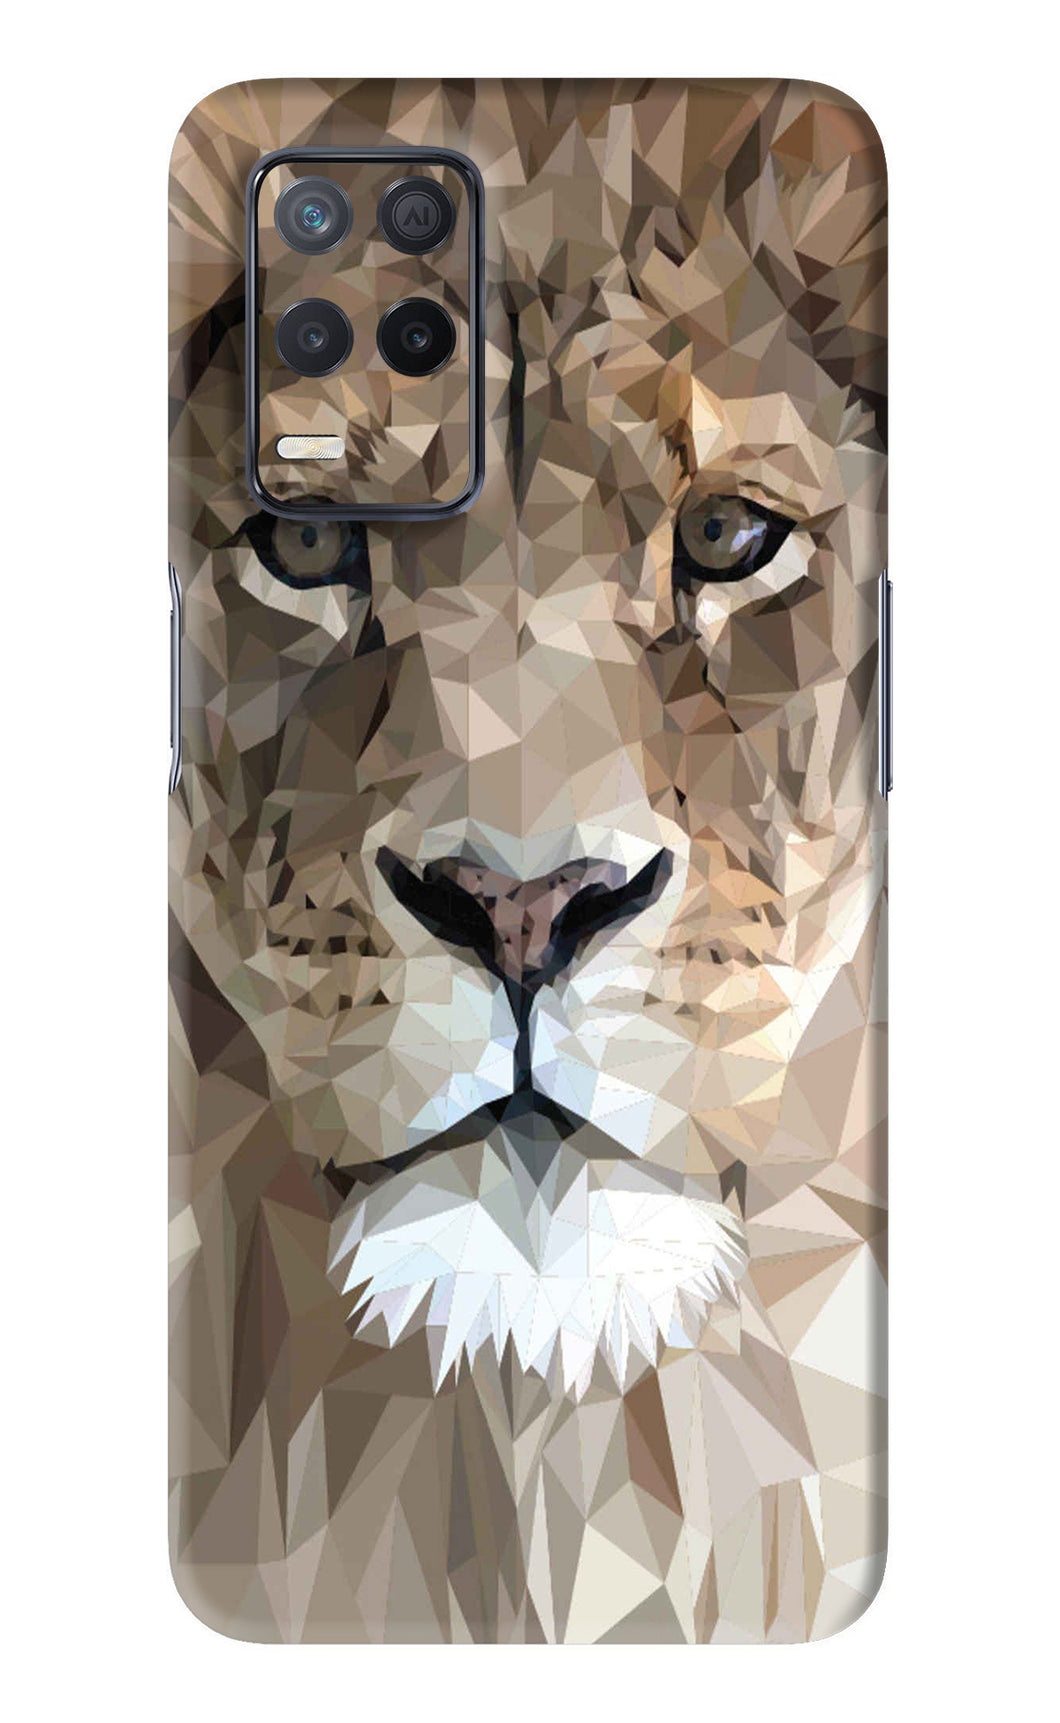 Lion Art Realme 8s Back Skin Wrap